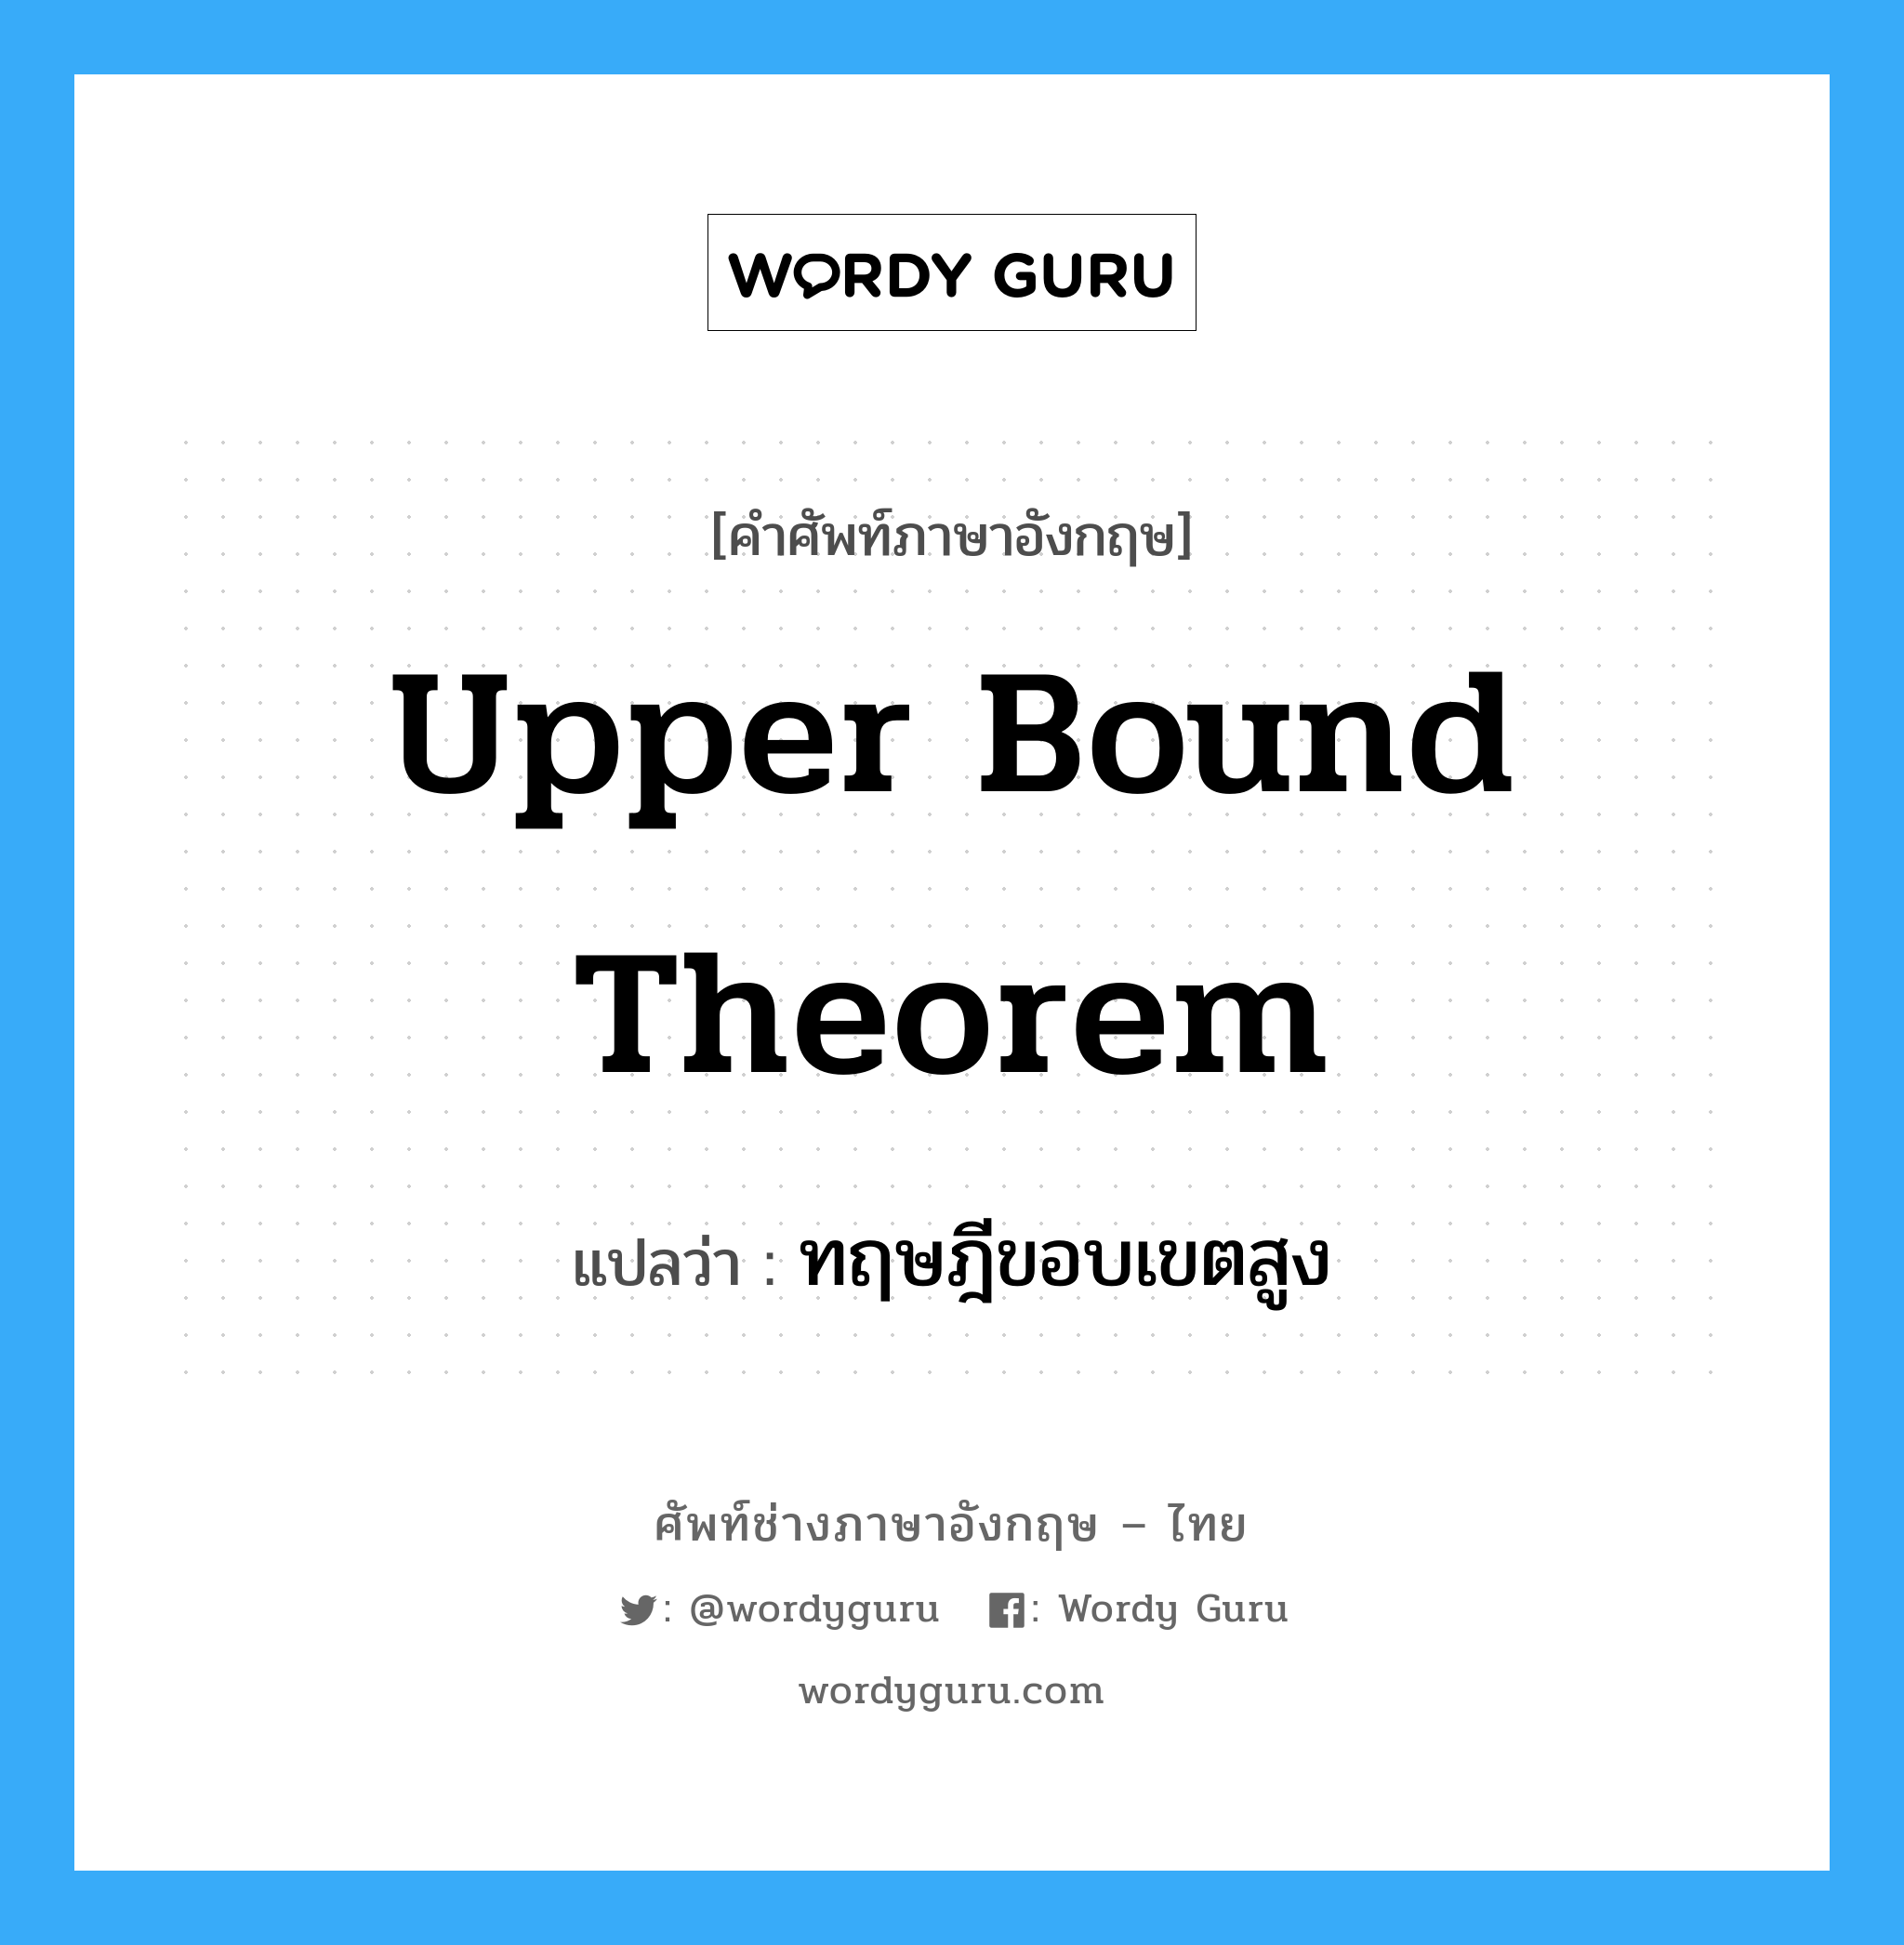 ทฤษฎีขอบเขตสูง ภาษาอังกฤษ?, คำศัพท์ช่างภาษาอังกฤษ - ไทย ทฤษฎีขอบเขตสูง คำศัพท์ภาษาอังกฤษ ทฤษฎีขอบเขตสูง แปลว่า Upper Bound Theorem